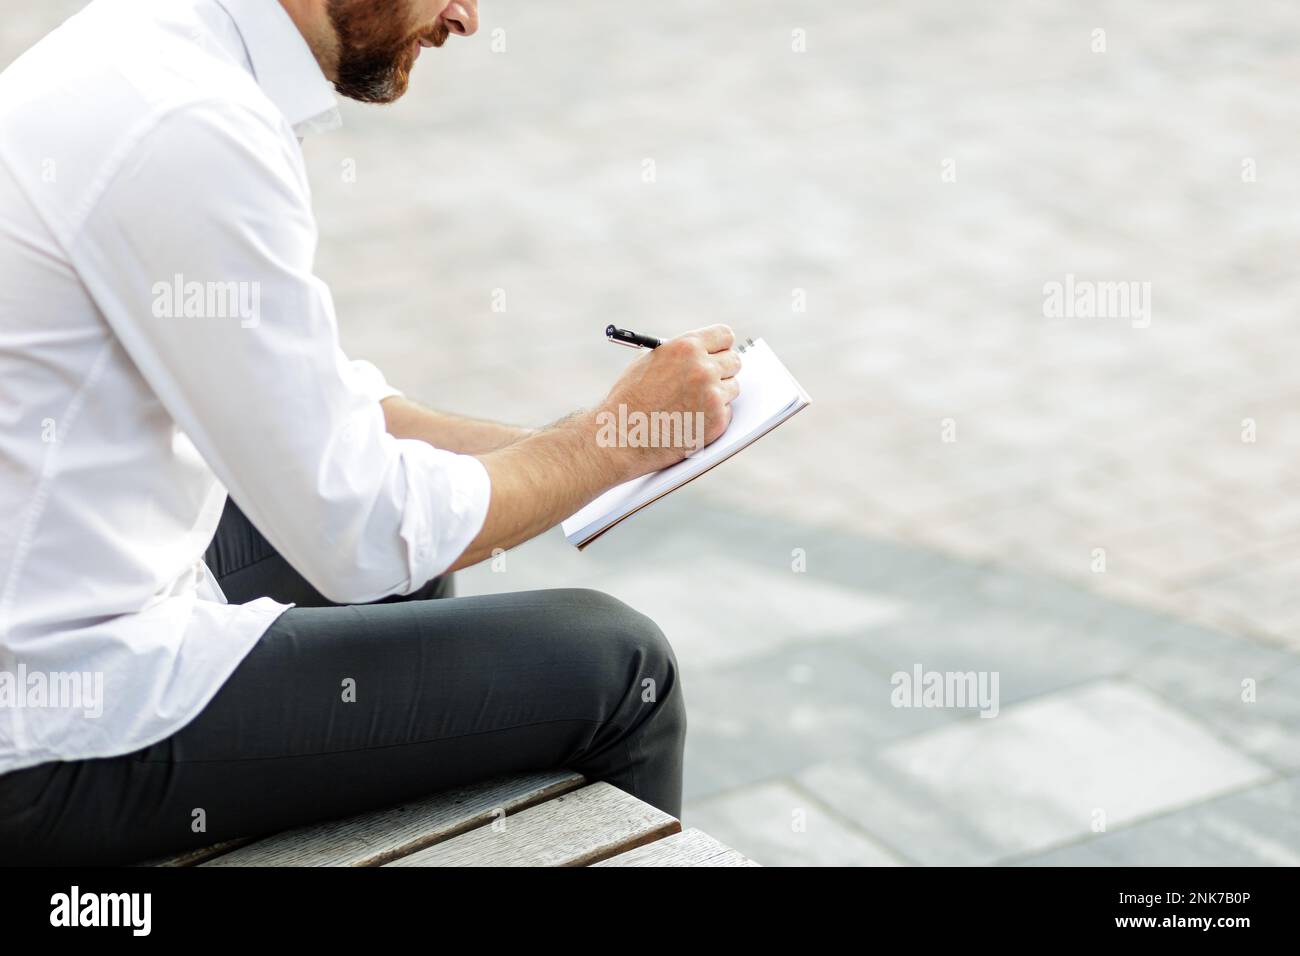 Kurzer Blick auf einen bärtigen Geschäftsmann, der auf einer Bank in der Stadt sitzt und sich Notizen macht. Stylischer Mann in formeller Kleidung, der kreative Ideen aufschreibt Stockfoto